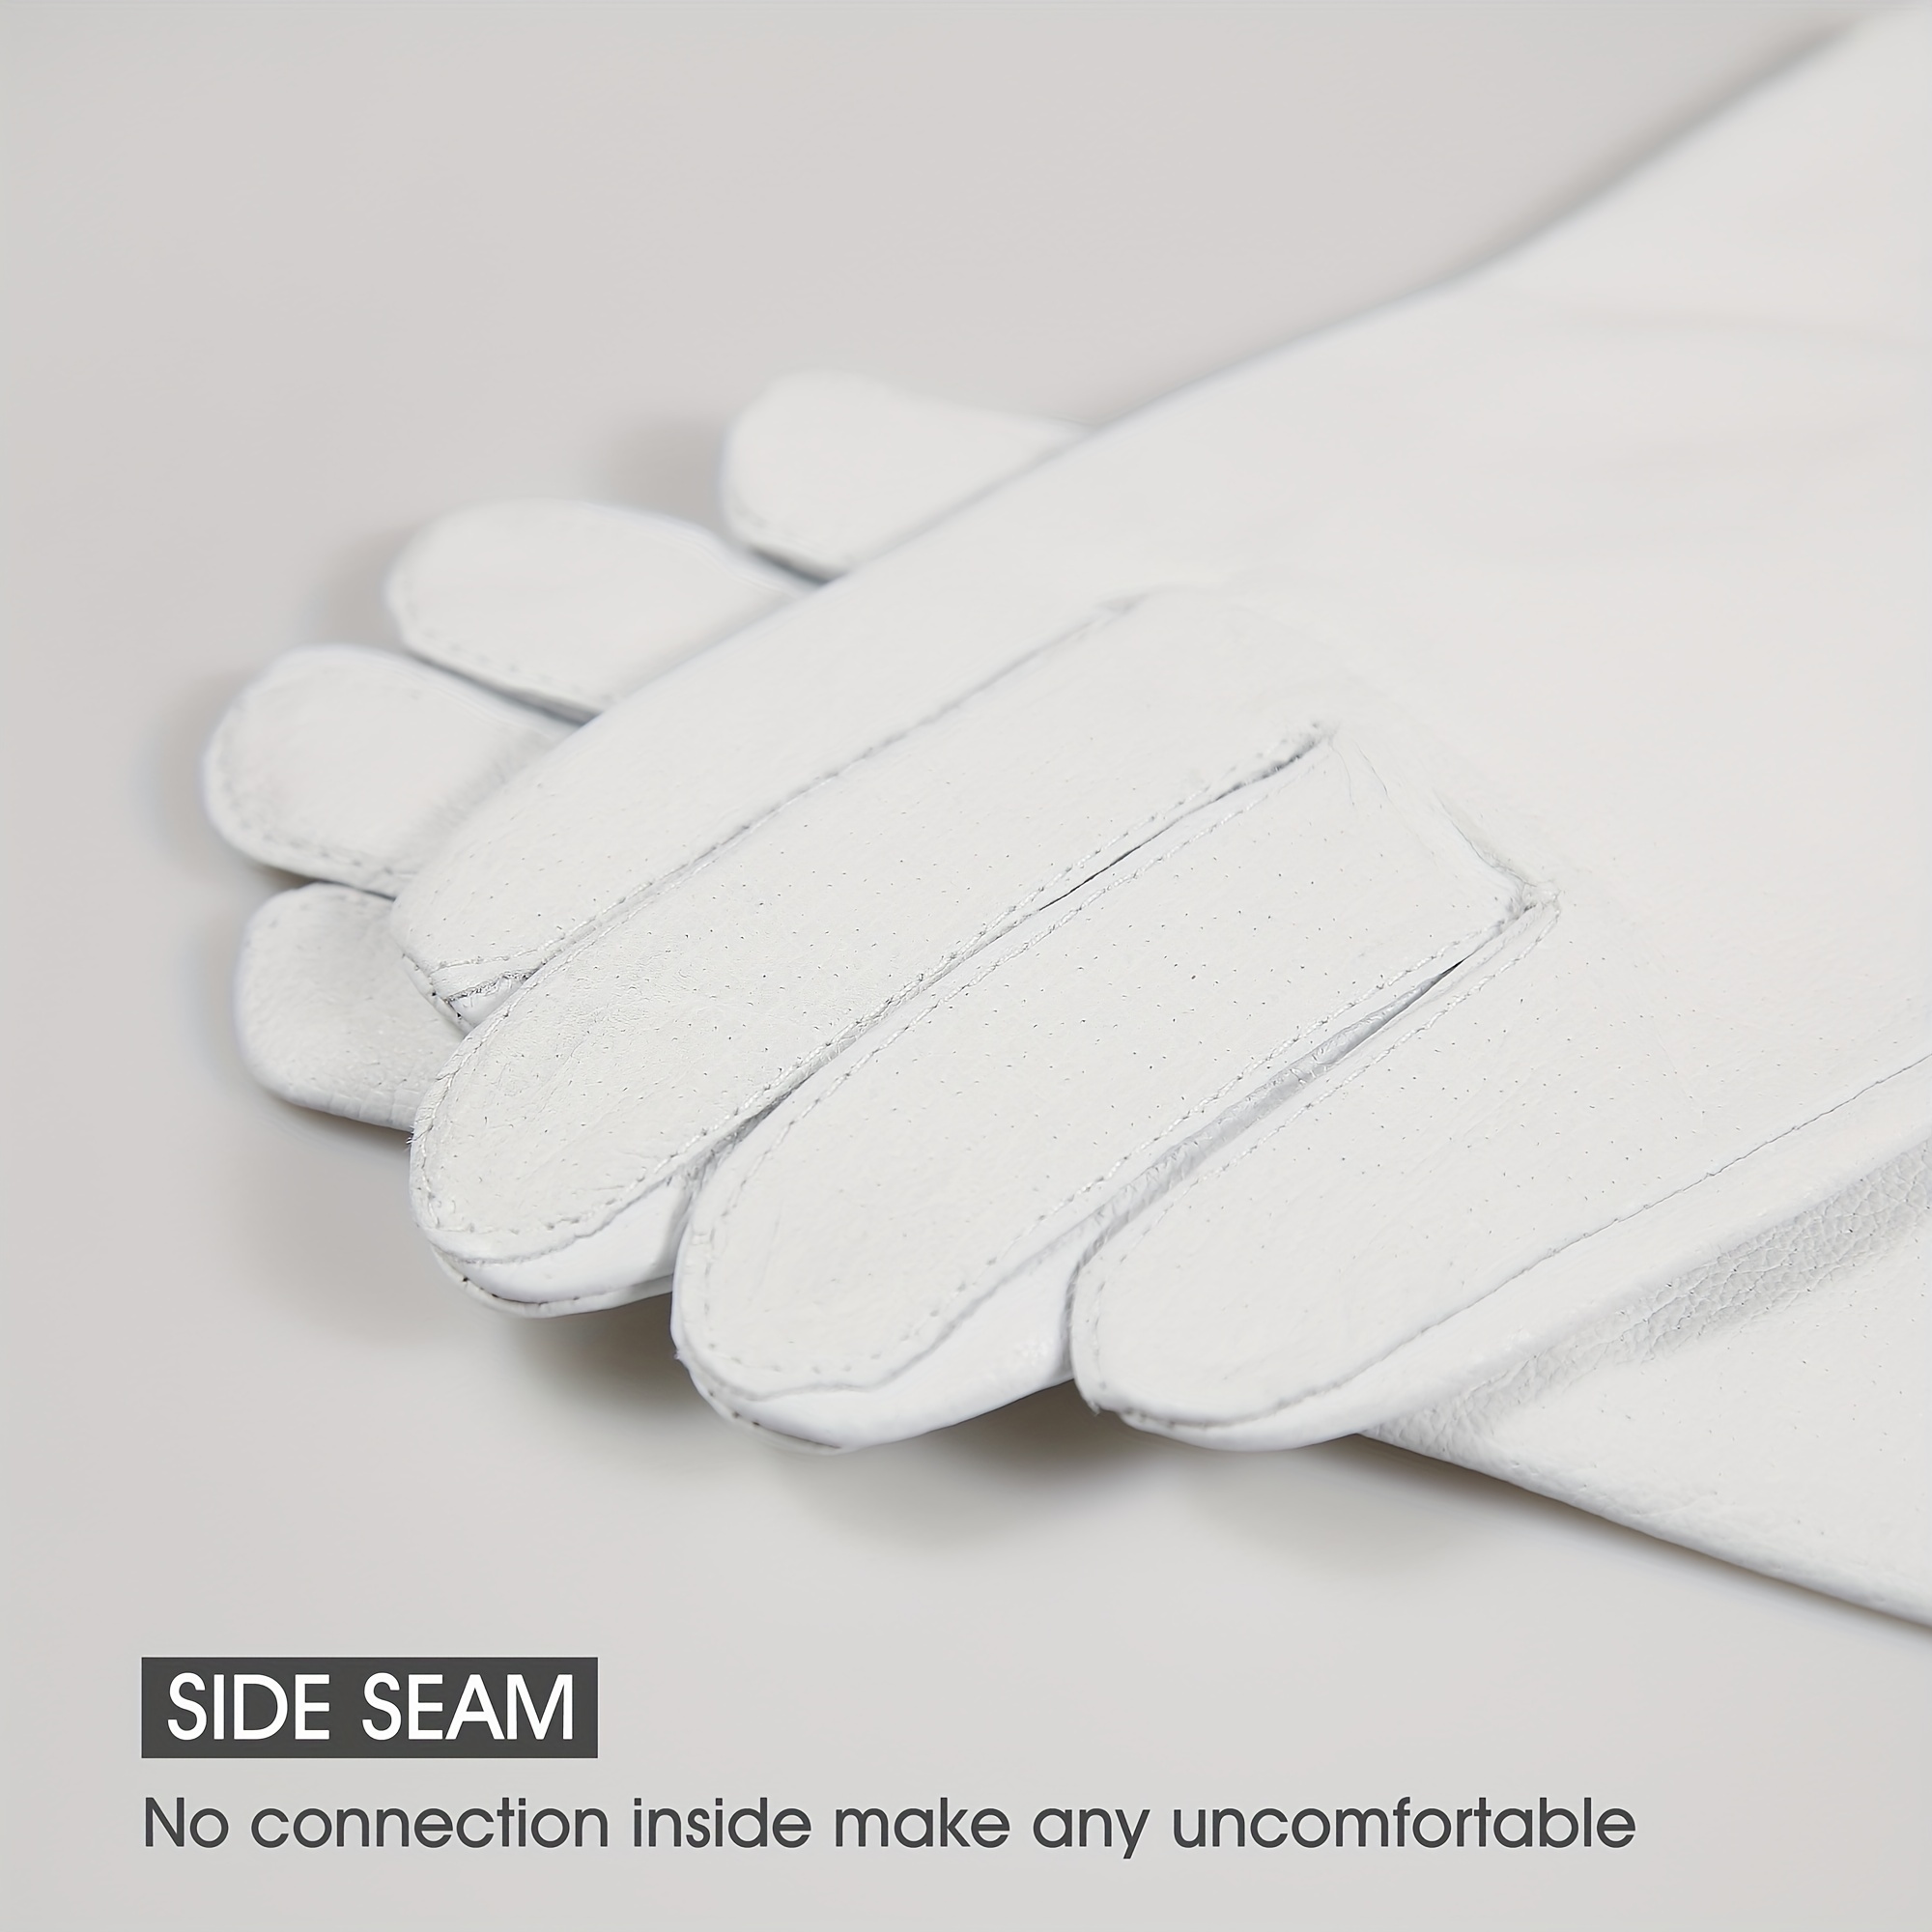 Ultra thin Safety Work Gloves Excellent Grip Knit Wrist Cuff - Temu